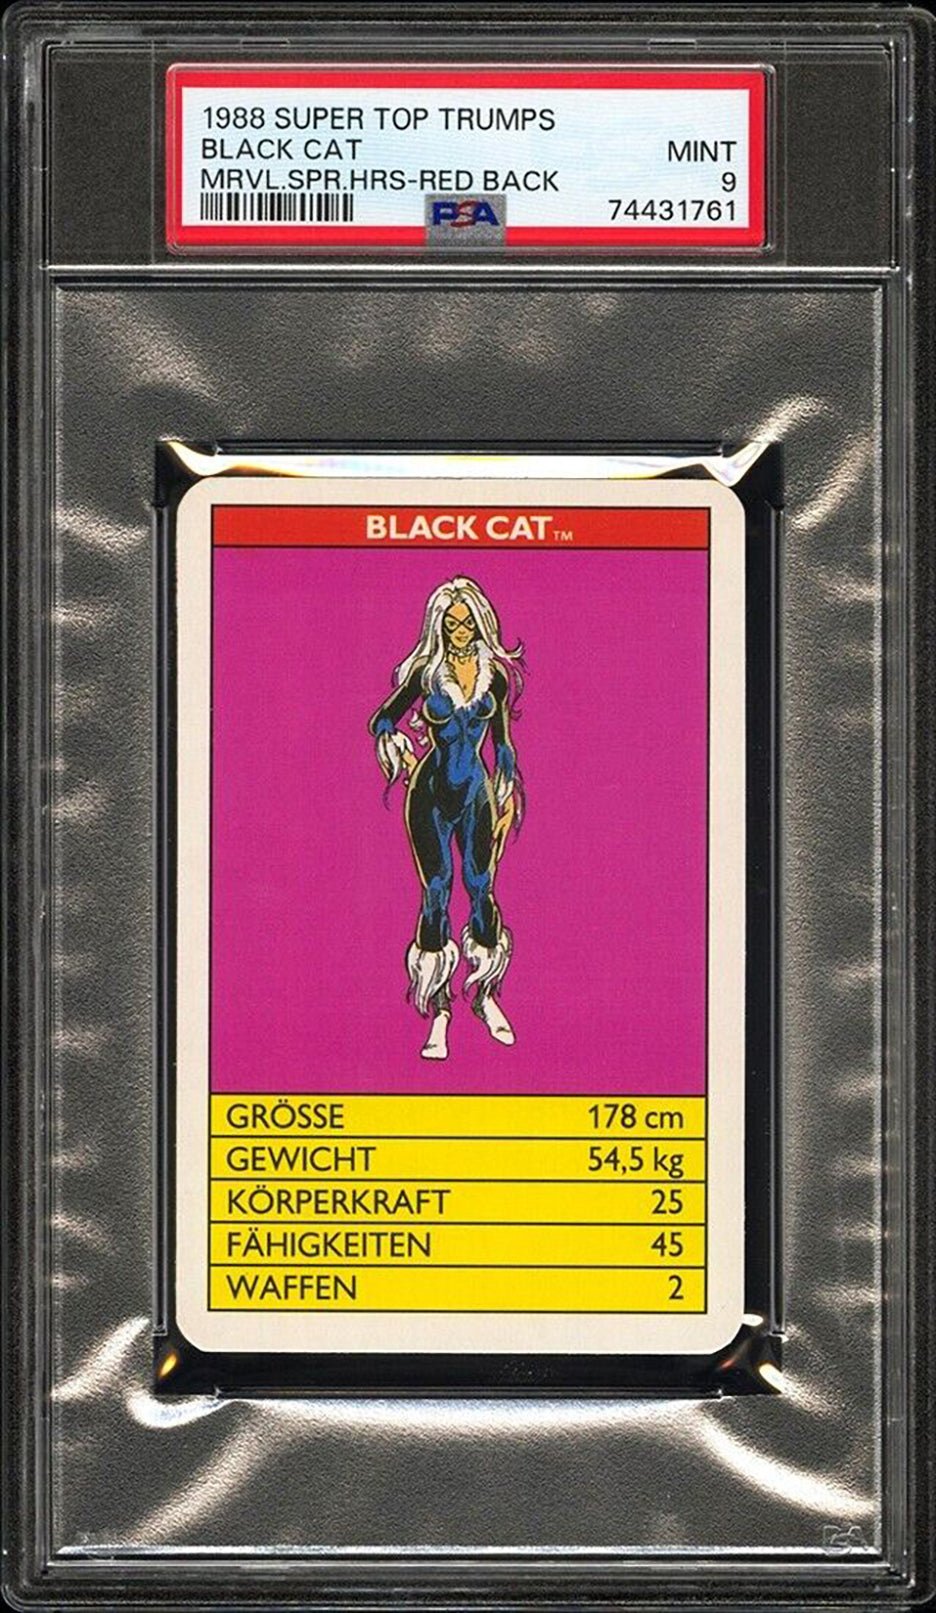 BLACK CAT PSA 9 1988 Super Top Trumps Marvel Super Heroes Red Back C1 Marvel Base Graded Cards - Hobby Gems